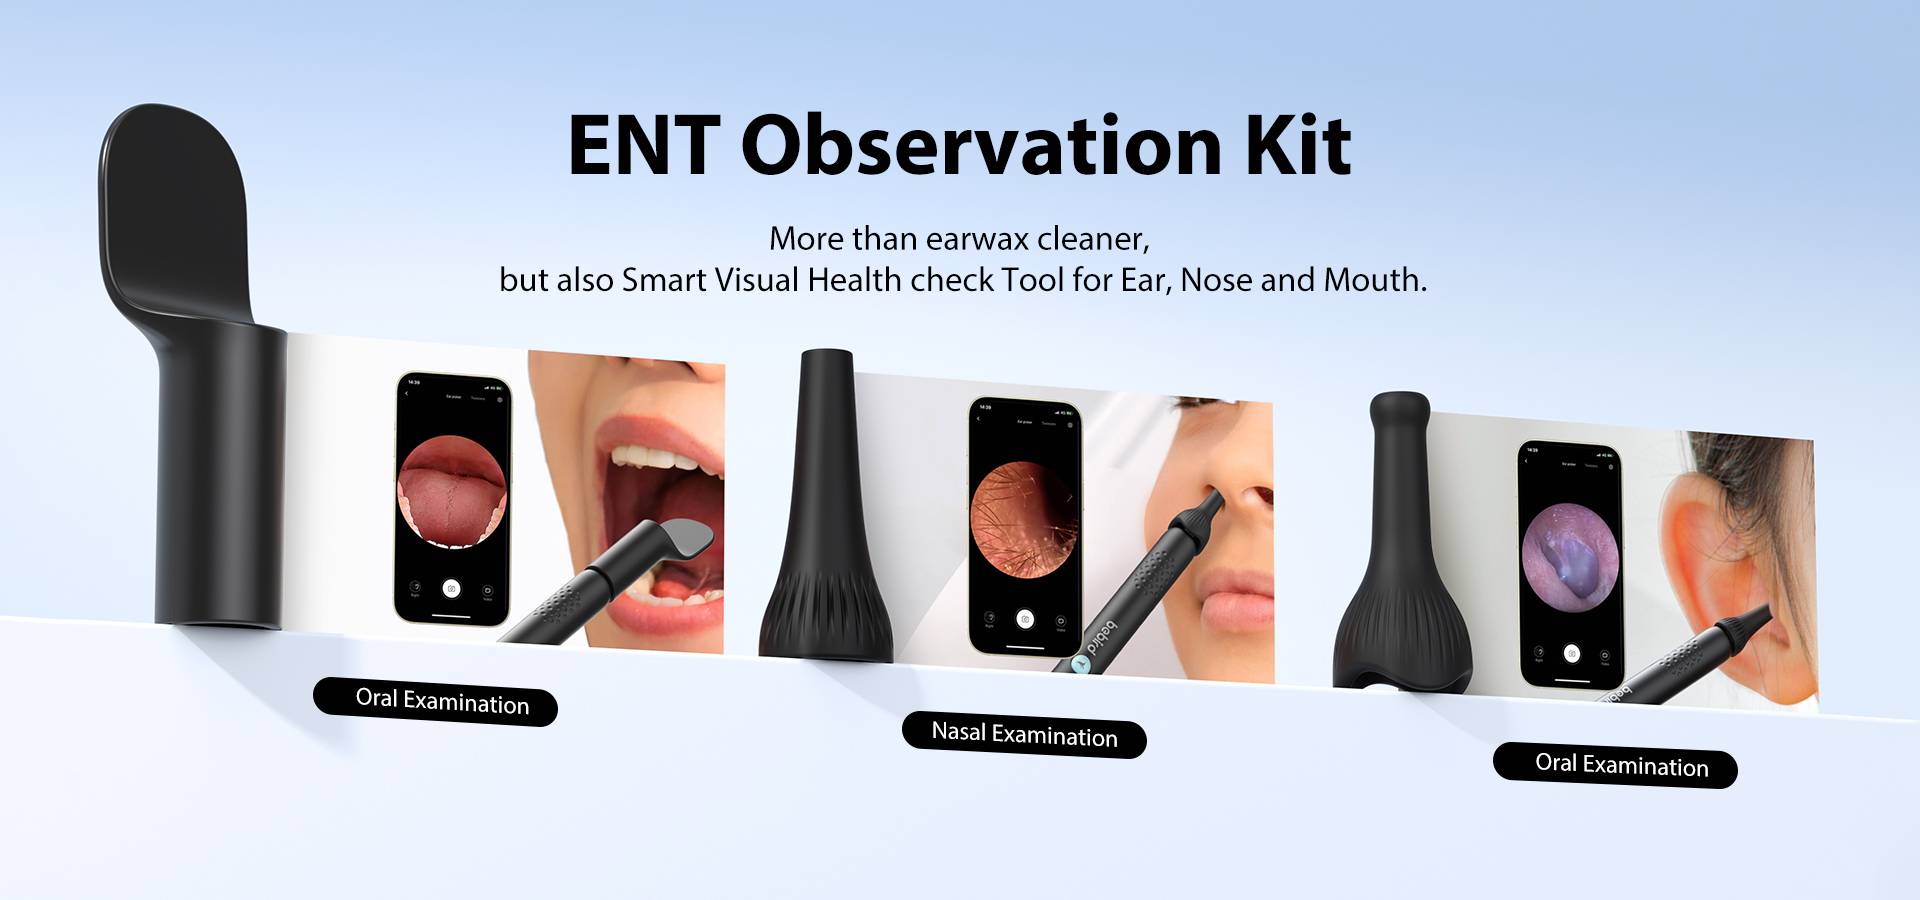 ENT Observation kit